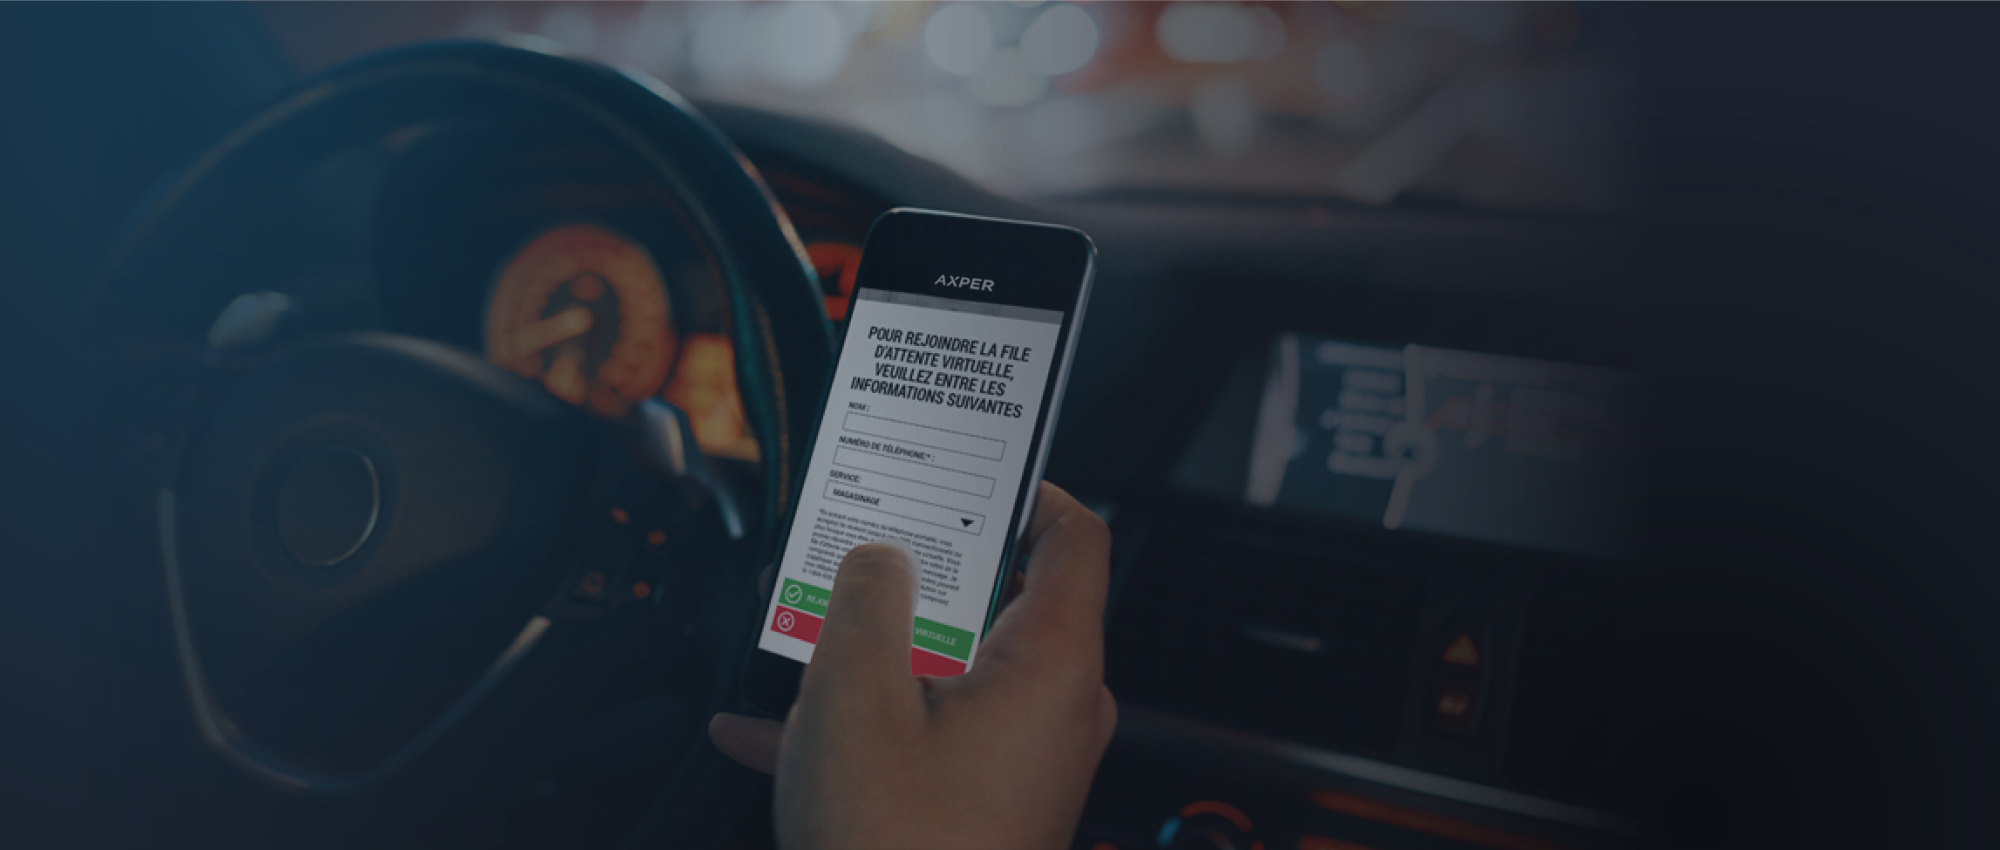 Image de fond d'un téléphone dans une voiture, affichant l'application de file d'attente d'Axper. L'écran affiche "Pour rejoindre la file d'attente virtuelle, veuillez entrer les informations suivantes".